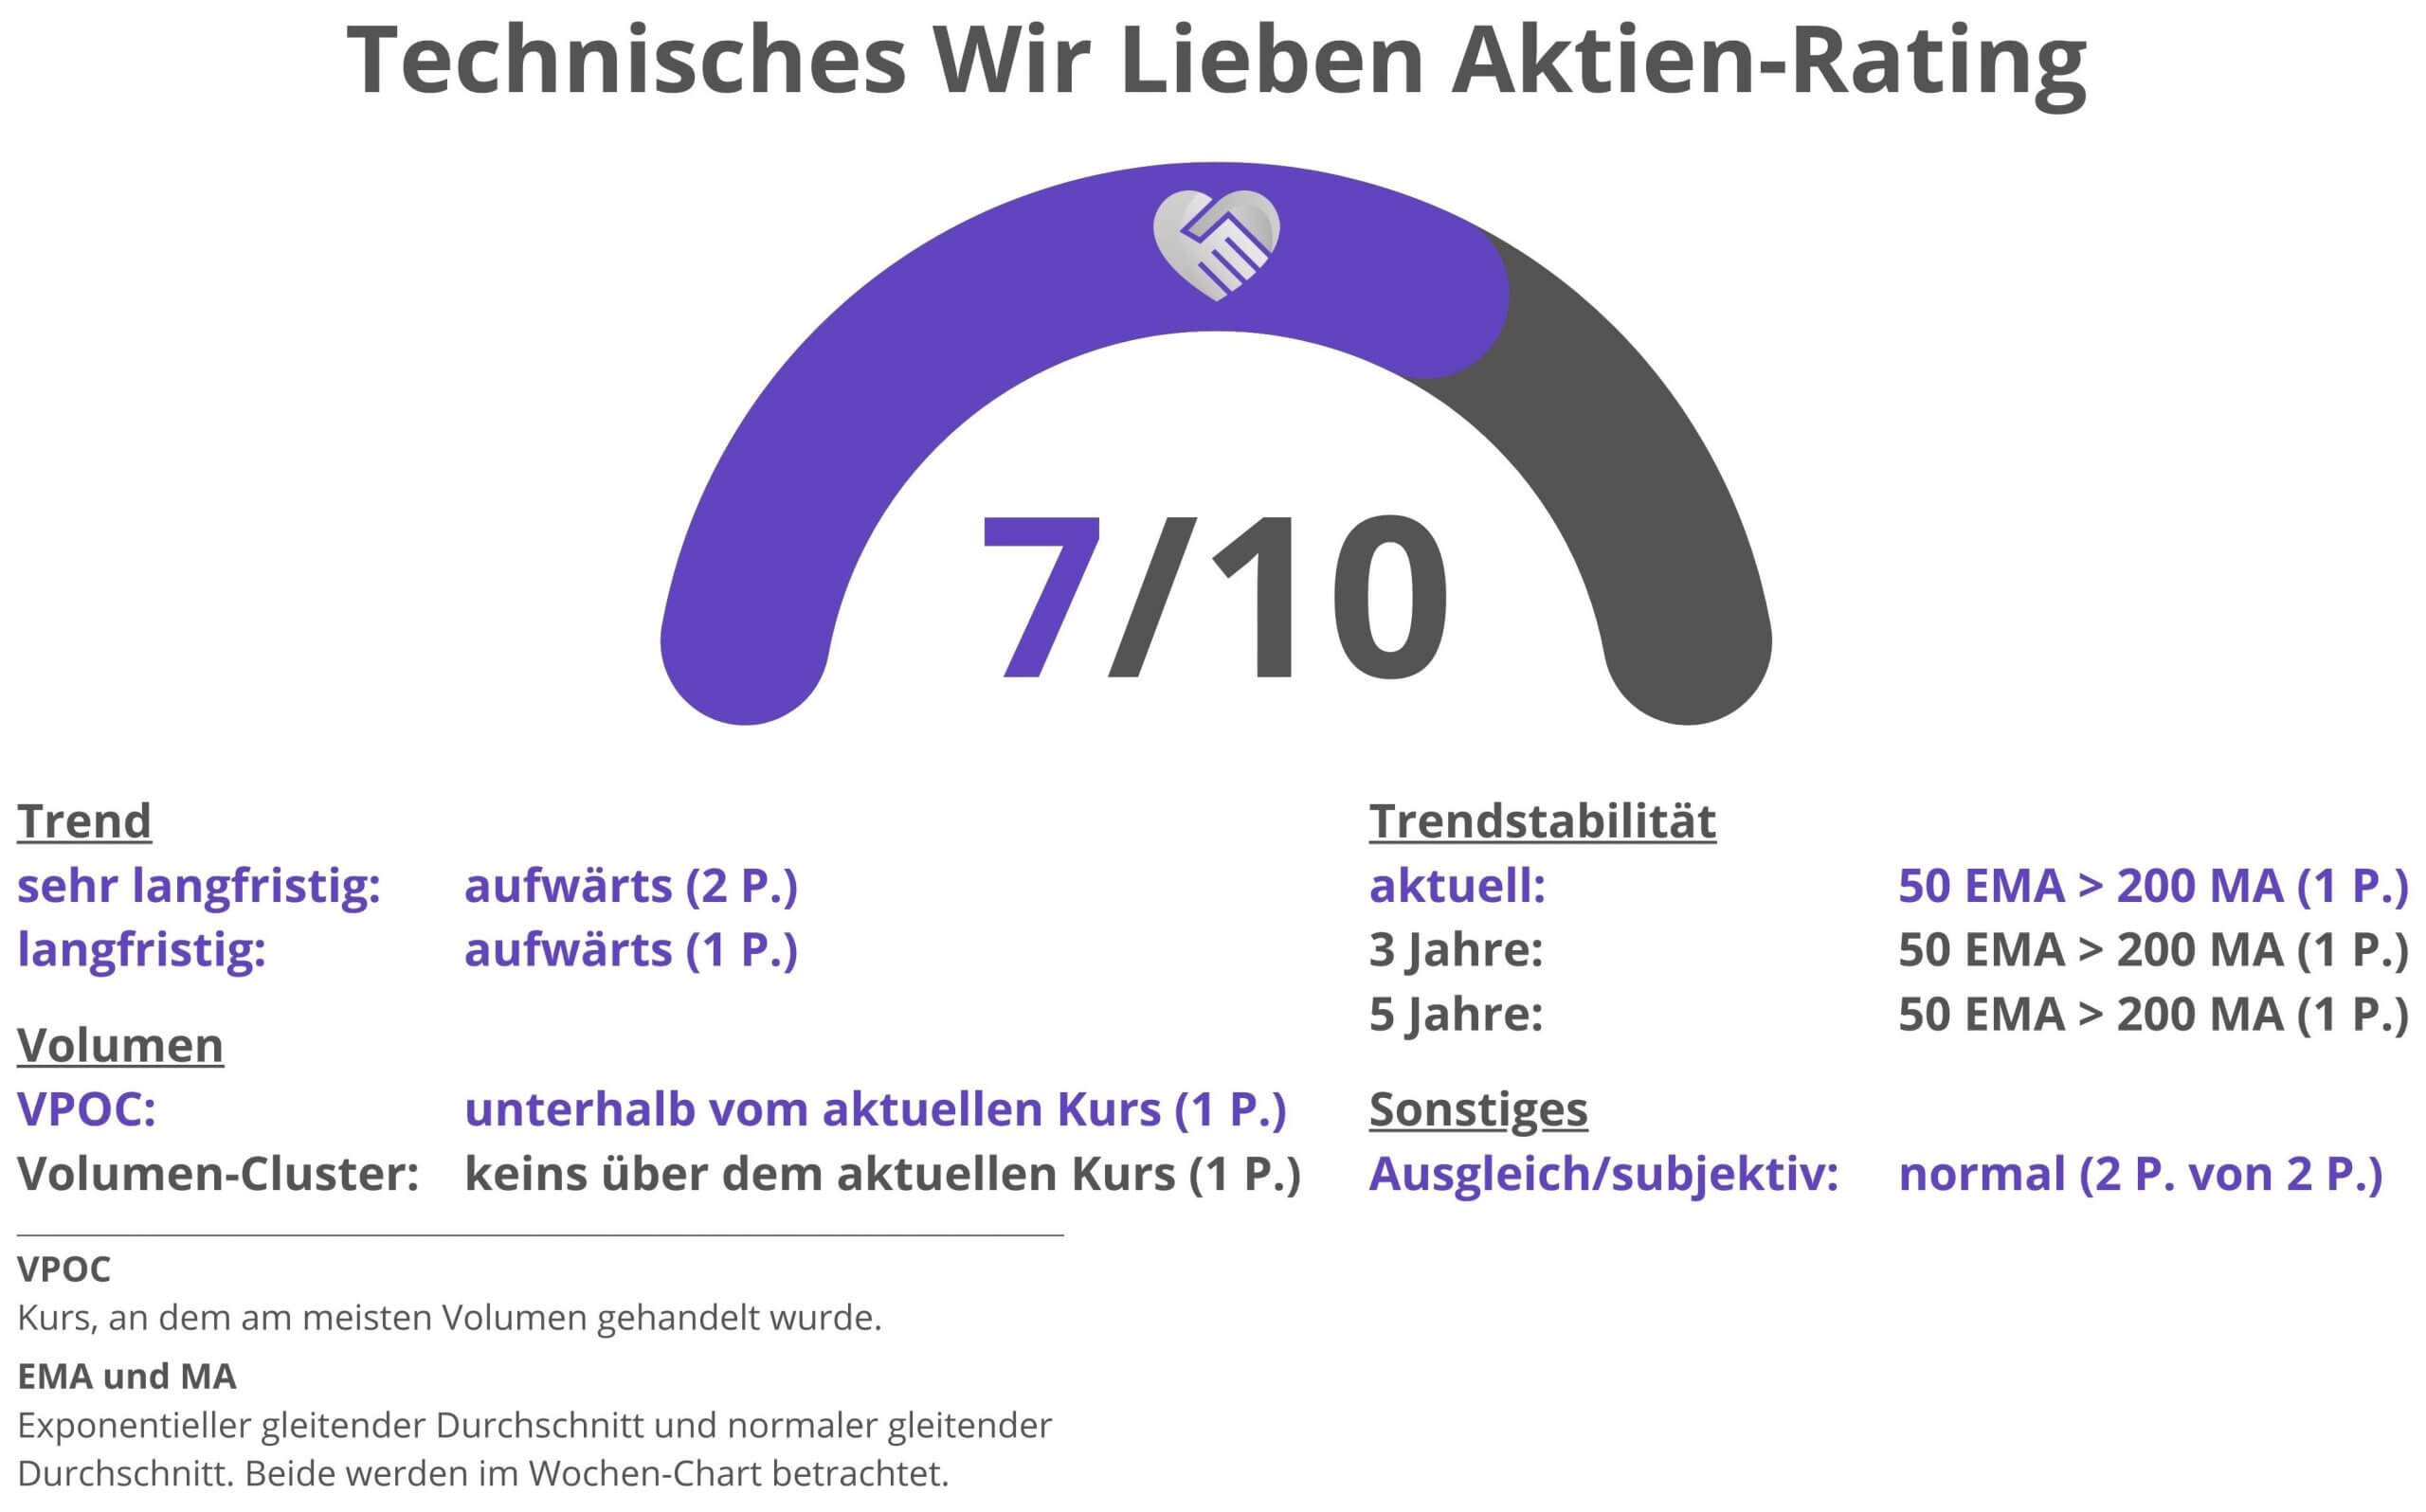 Technisches Rating Deutsche Post Aktie